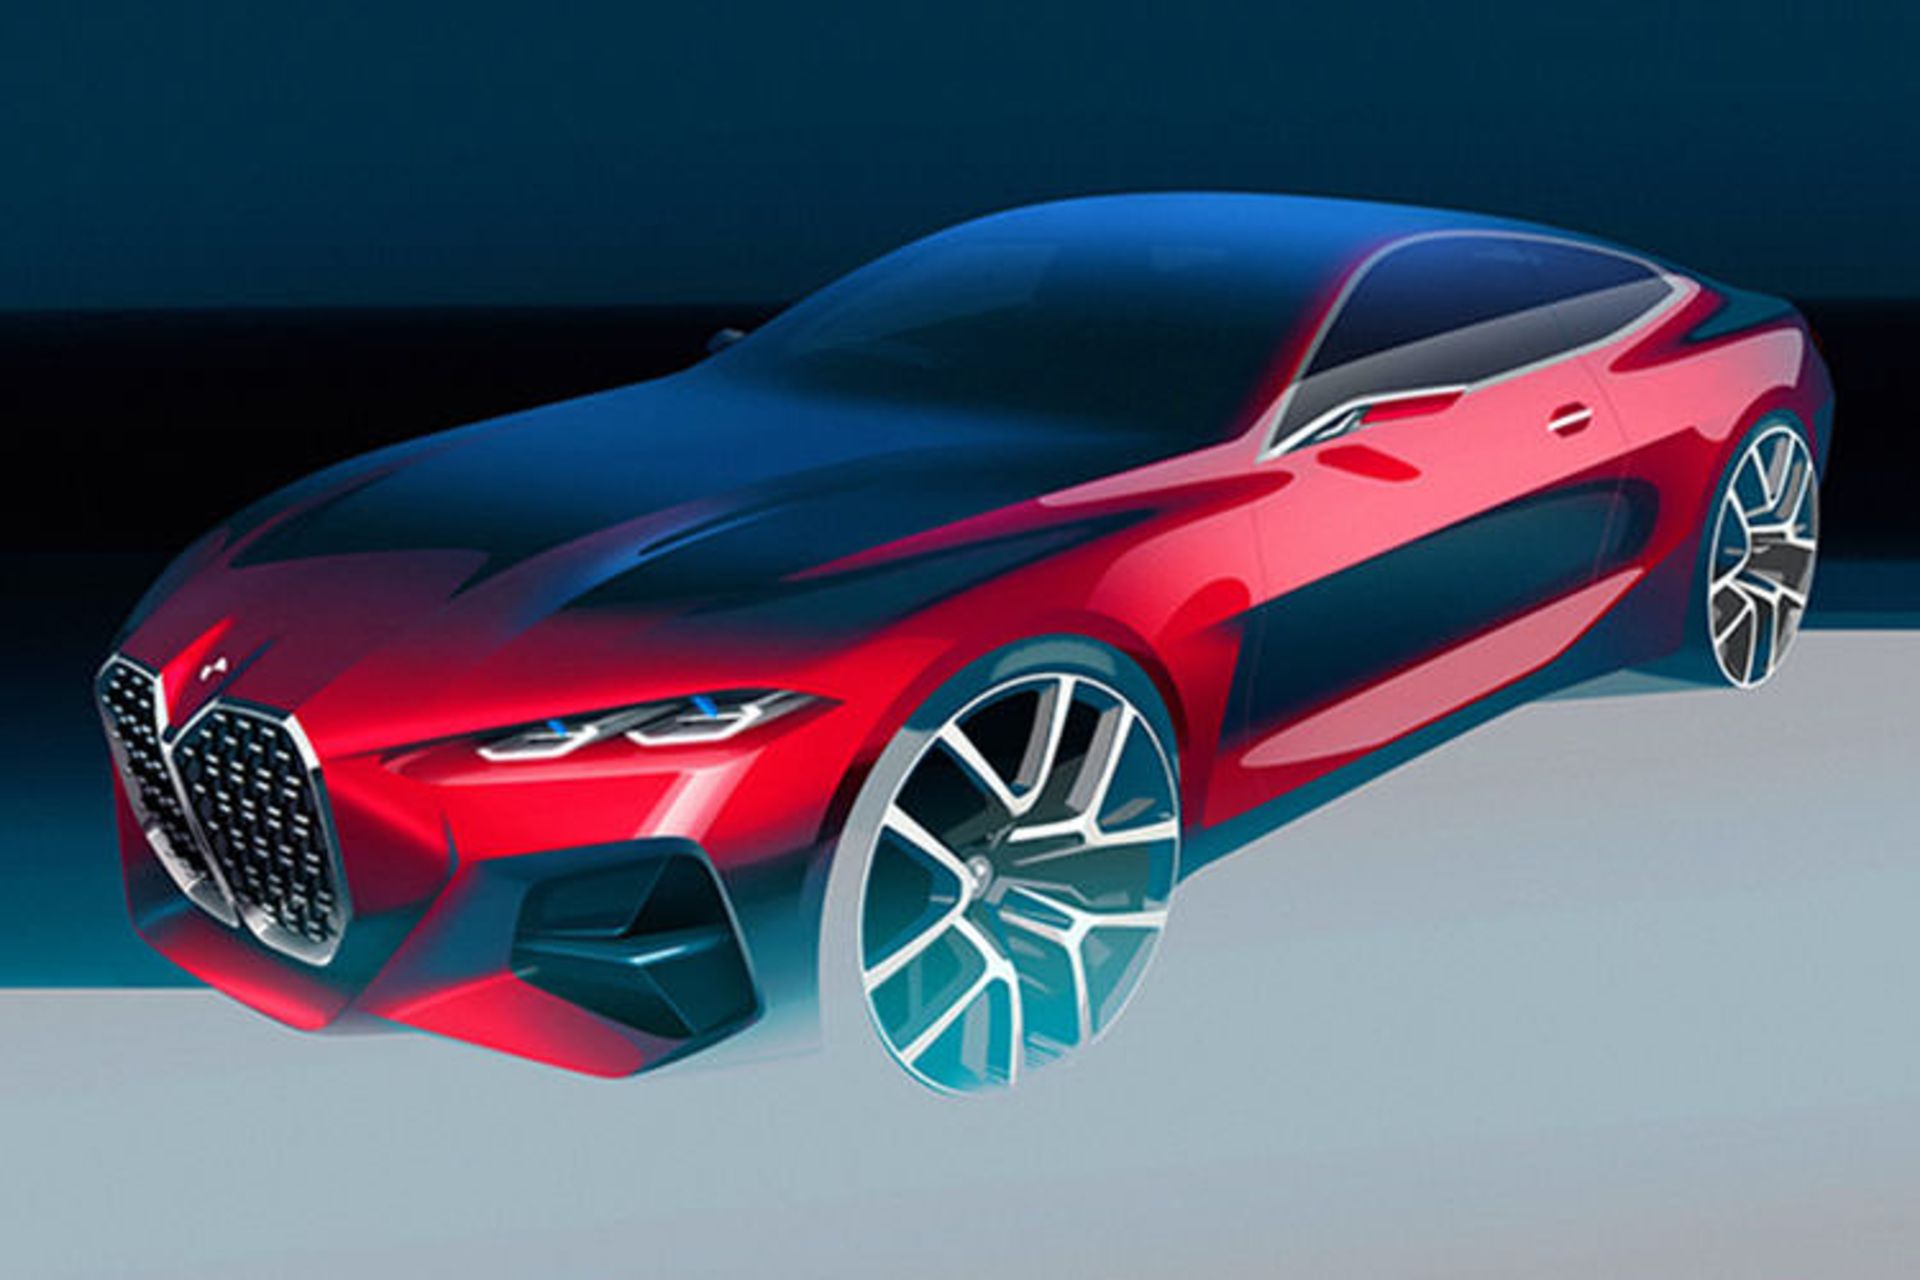 BMW Concept 4 / بی ام و کانسپت 4